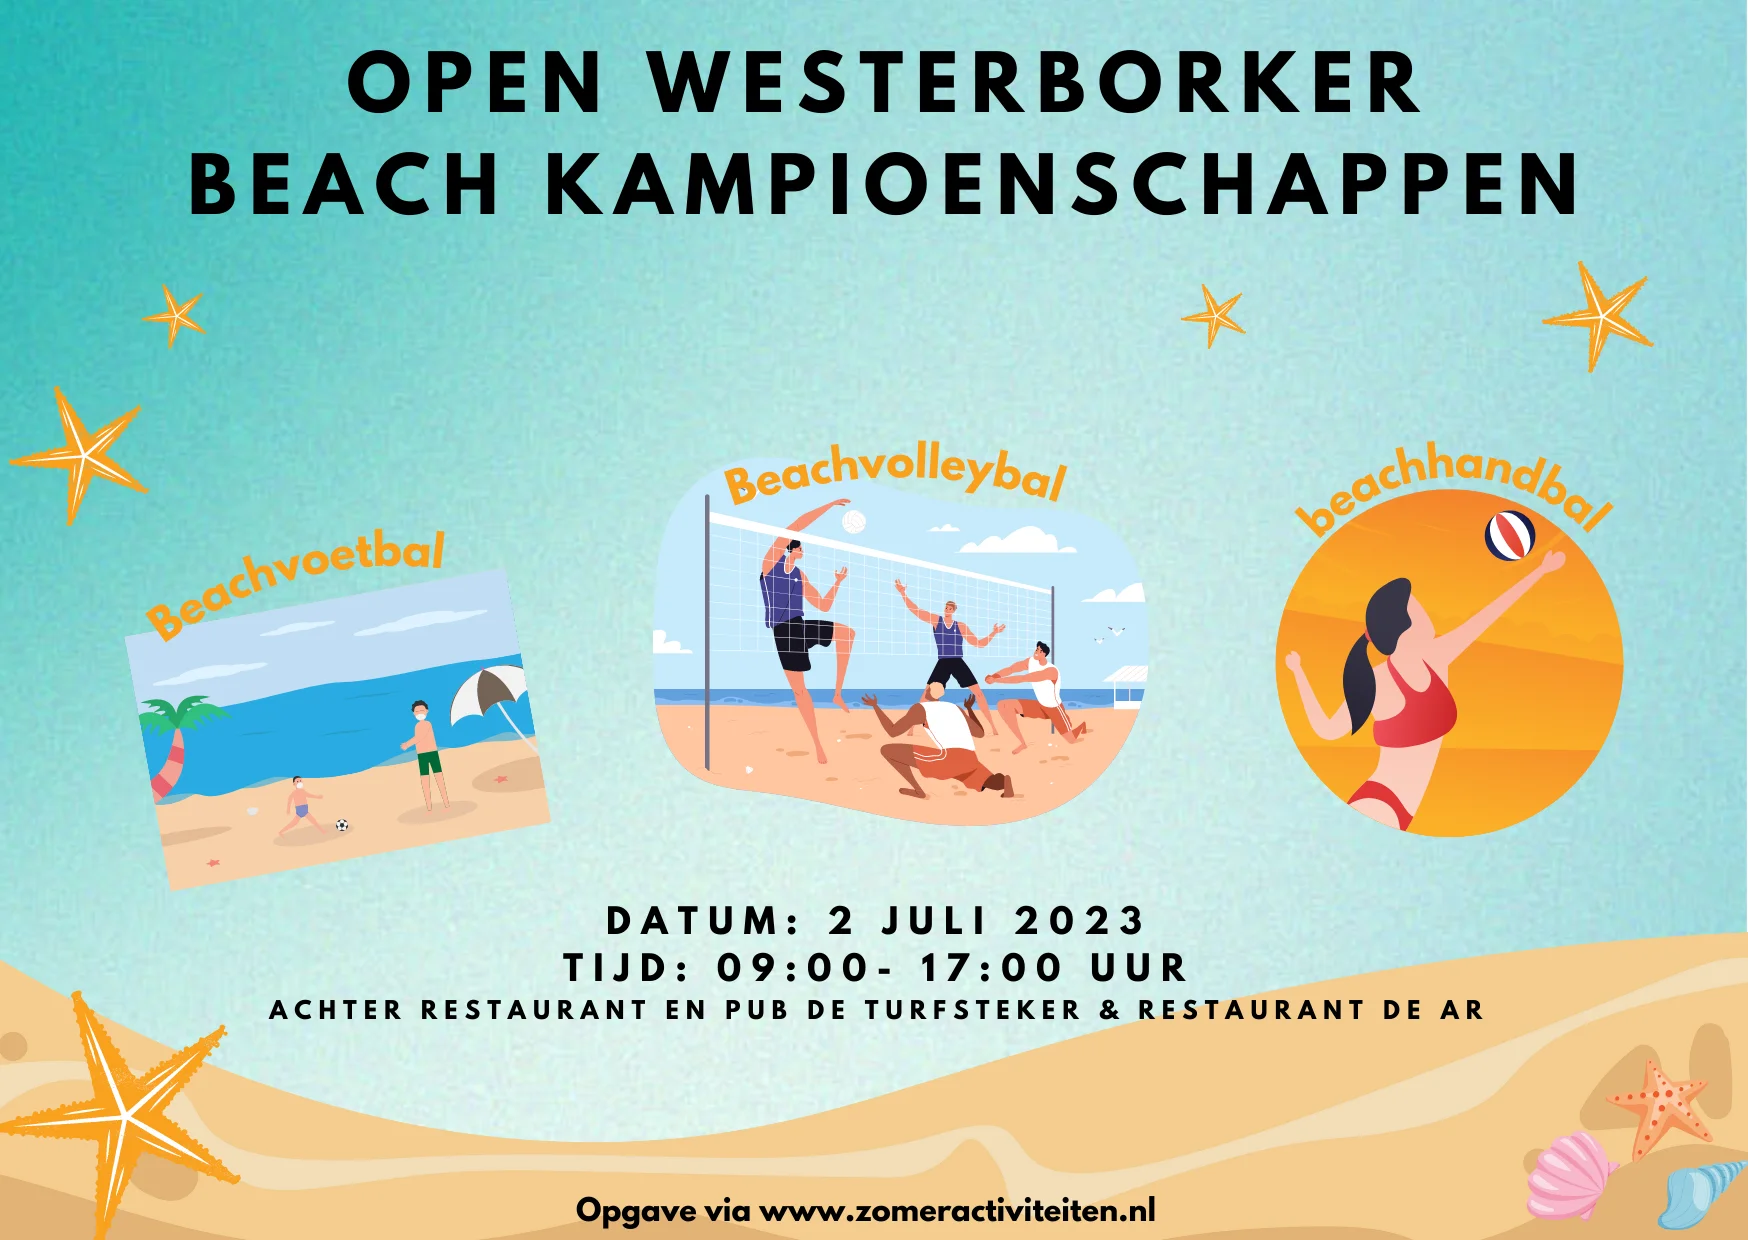  Open Westerborker Beach Kampioenschappen